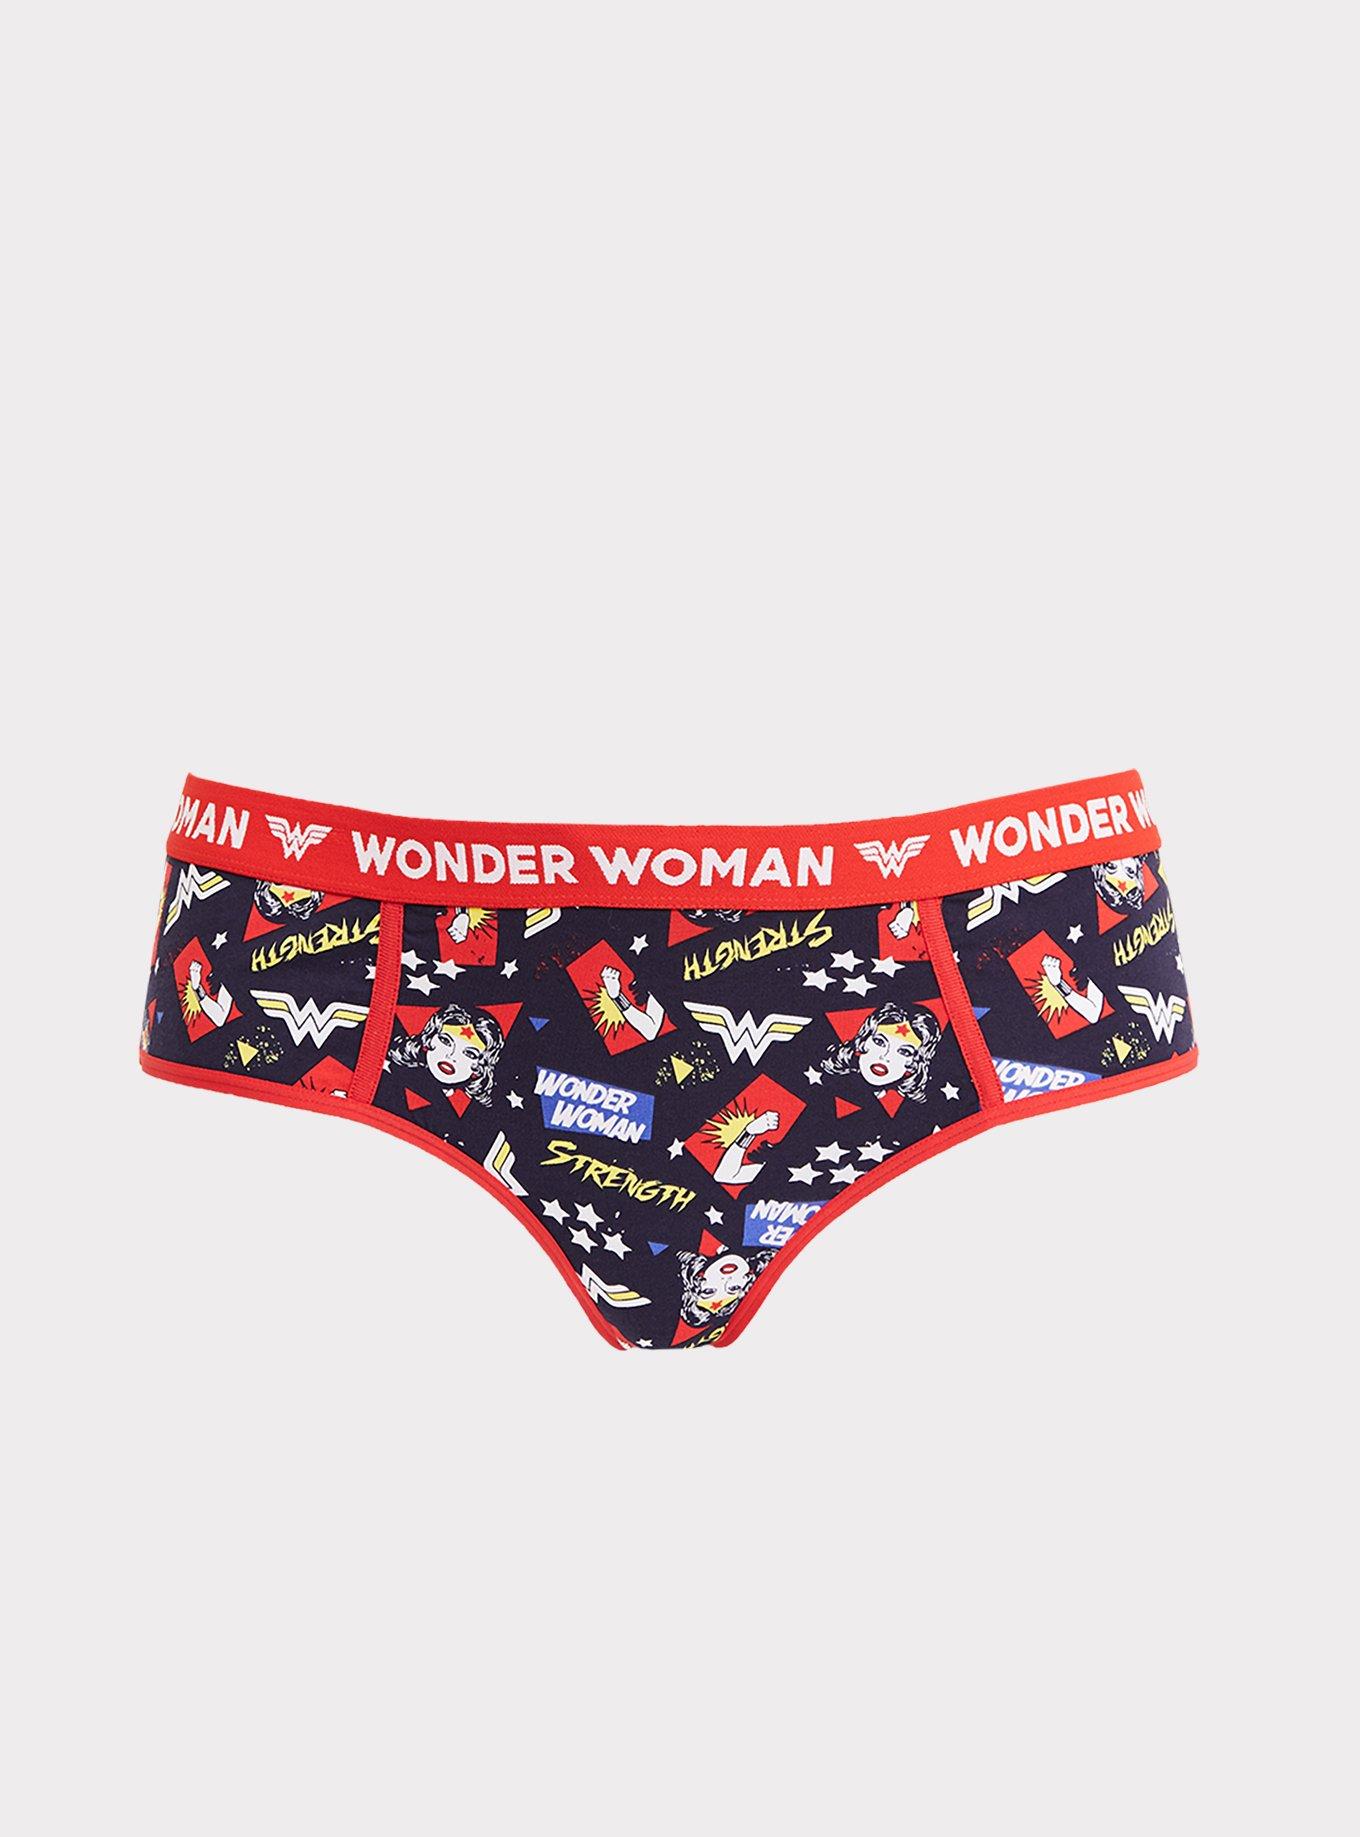 Wonder Woman Girls Stretch Hipster Briefs Underwear, 4-Pack Sizes 6-10